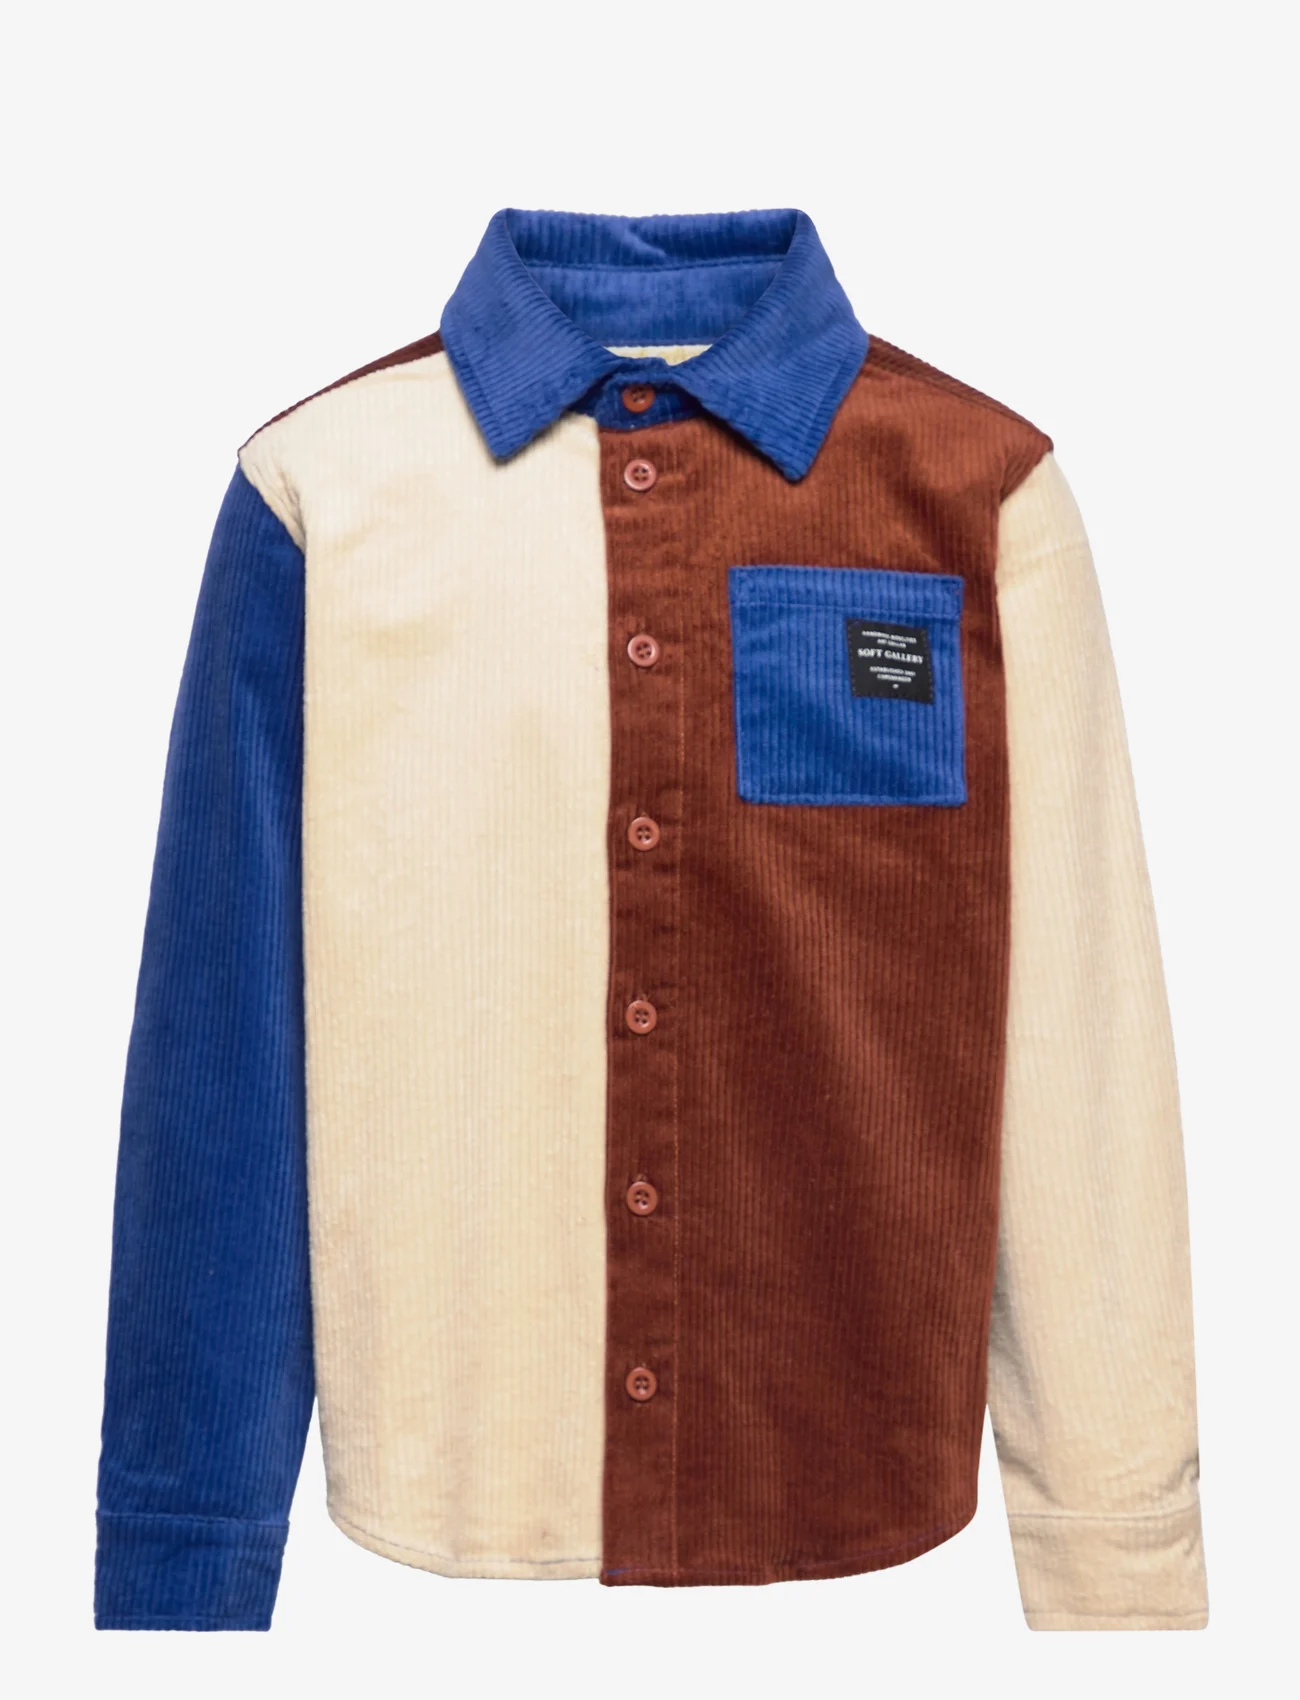 Soft Gallery - SGKILLIAN CORDUROY BLOCK SHIRT - långärmade skjortor - baked clay - 0